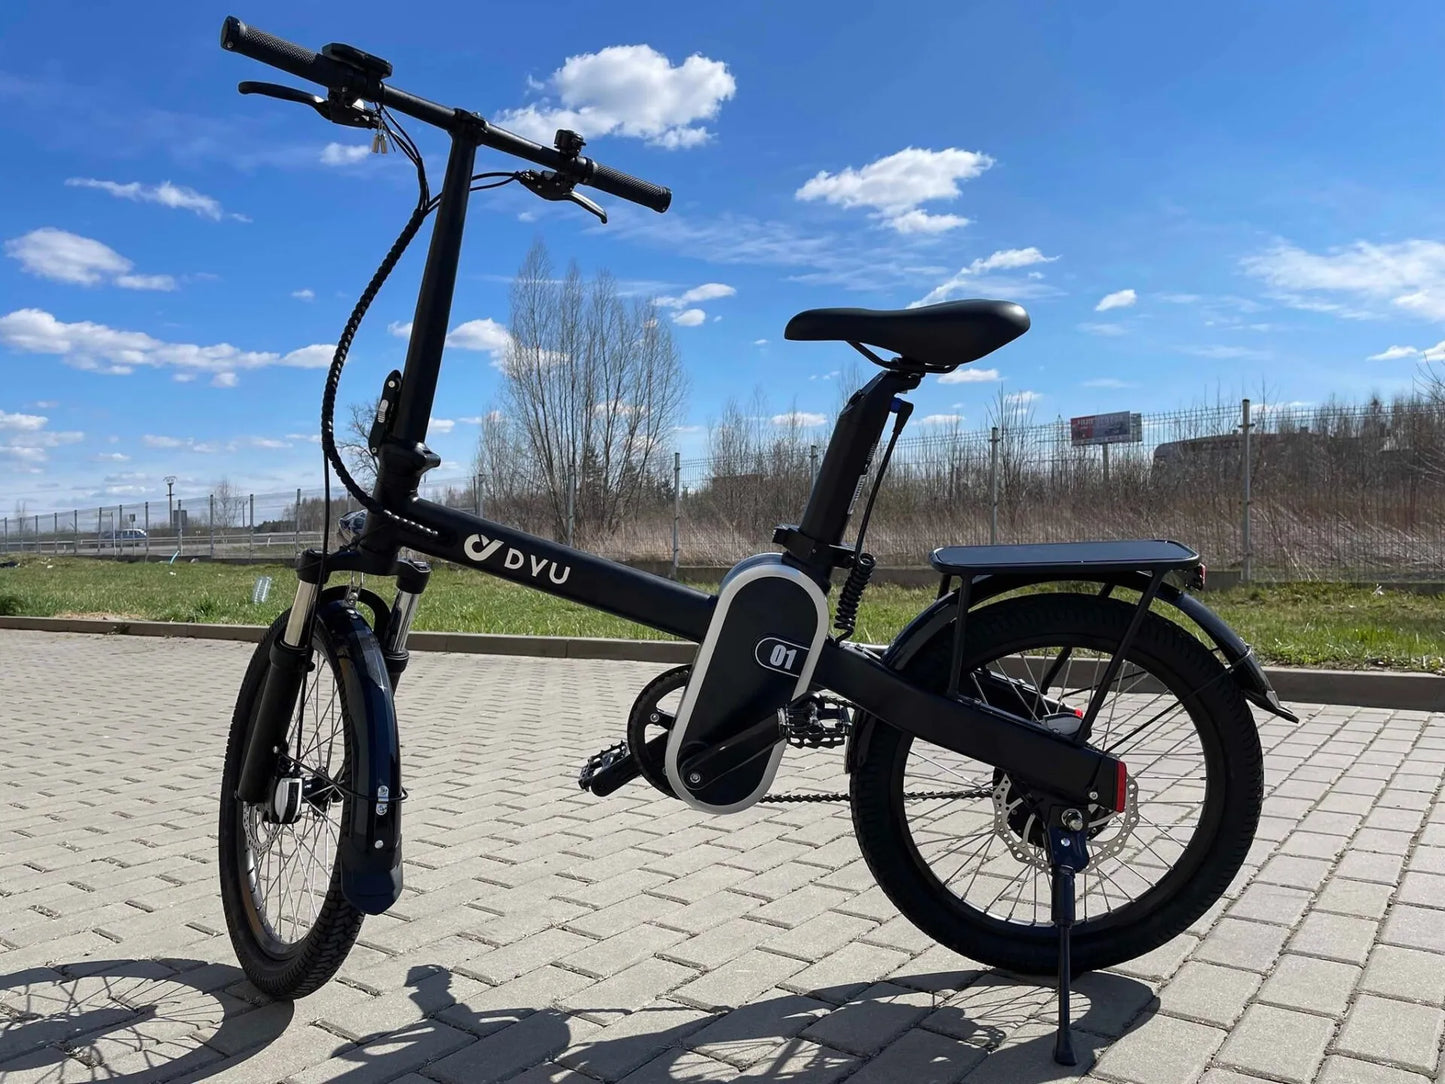 Xe đạp điện DYU R1 Mua 1 tặng 1 phiên bản giới hạn